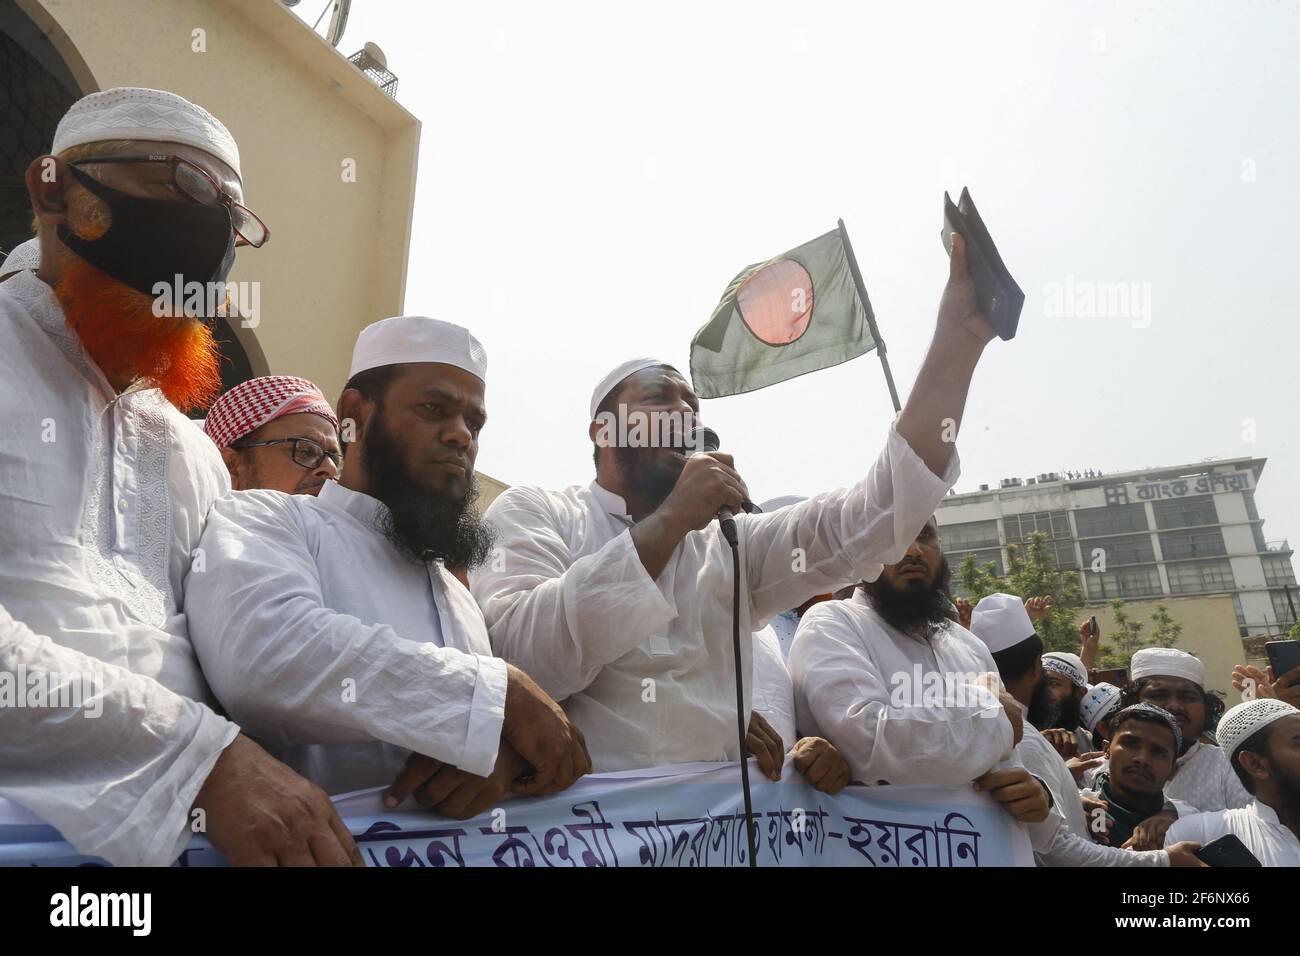 Hefajat-e-Islam realizó una manifestación frente a la Mezquita Nacional Baitul Mukarram en protesta por la muerte de sus activistas durante enfrentamientos con los encargados de hacer cumplir la ley durante tres días, en Dhaka, Bangladesh, 2 de abril de 2021. Foto de Kanti Das Suvra/ABACAPRESS.COM Foto de stock